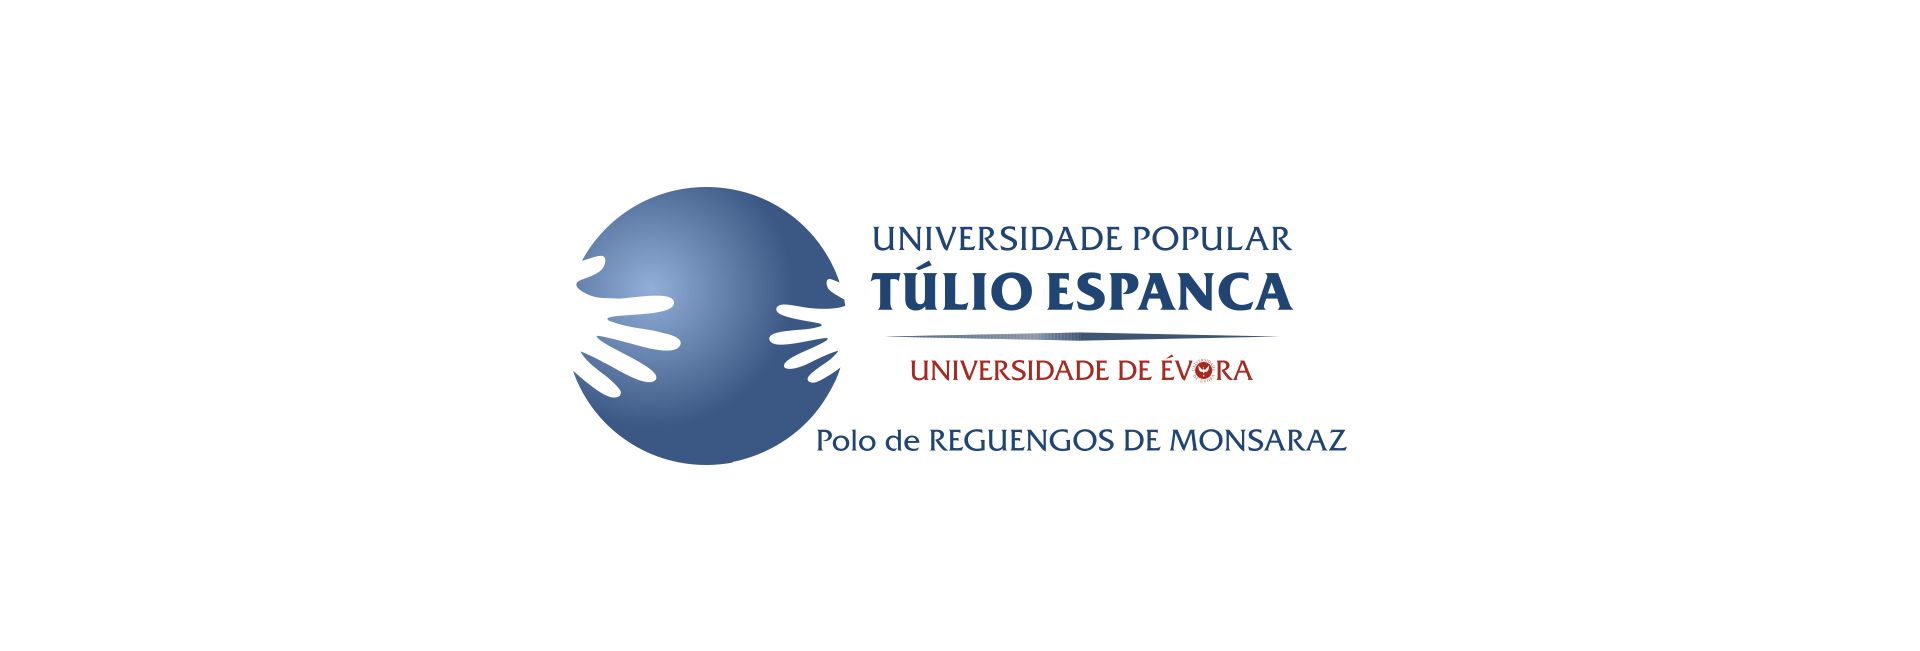 Universidade Popular Túlio Espanca – Polo de Reguengos de Monsaraz